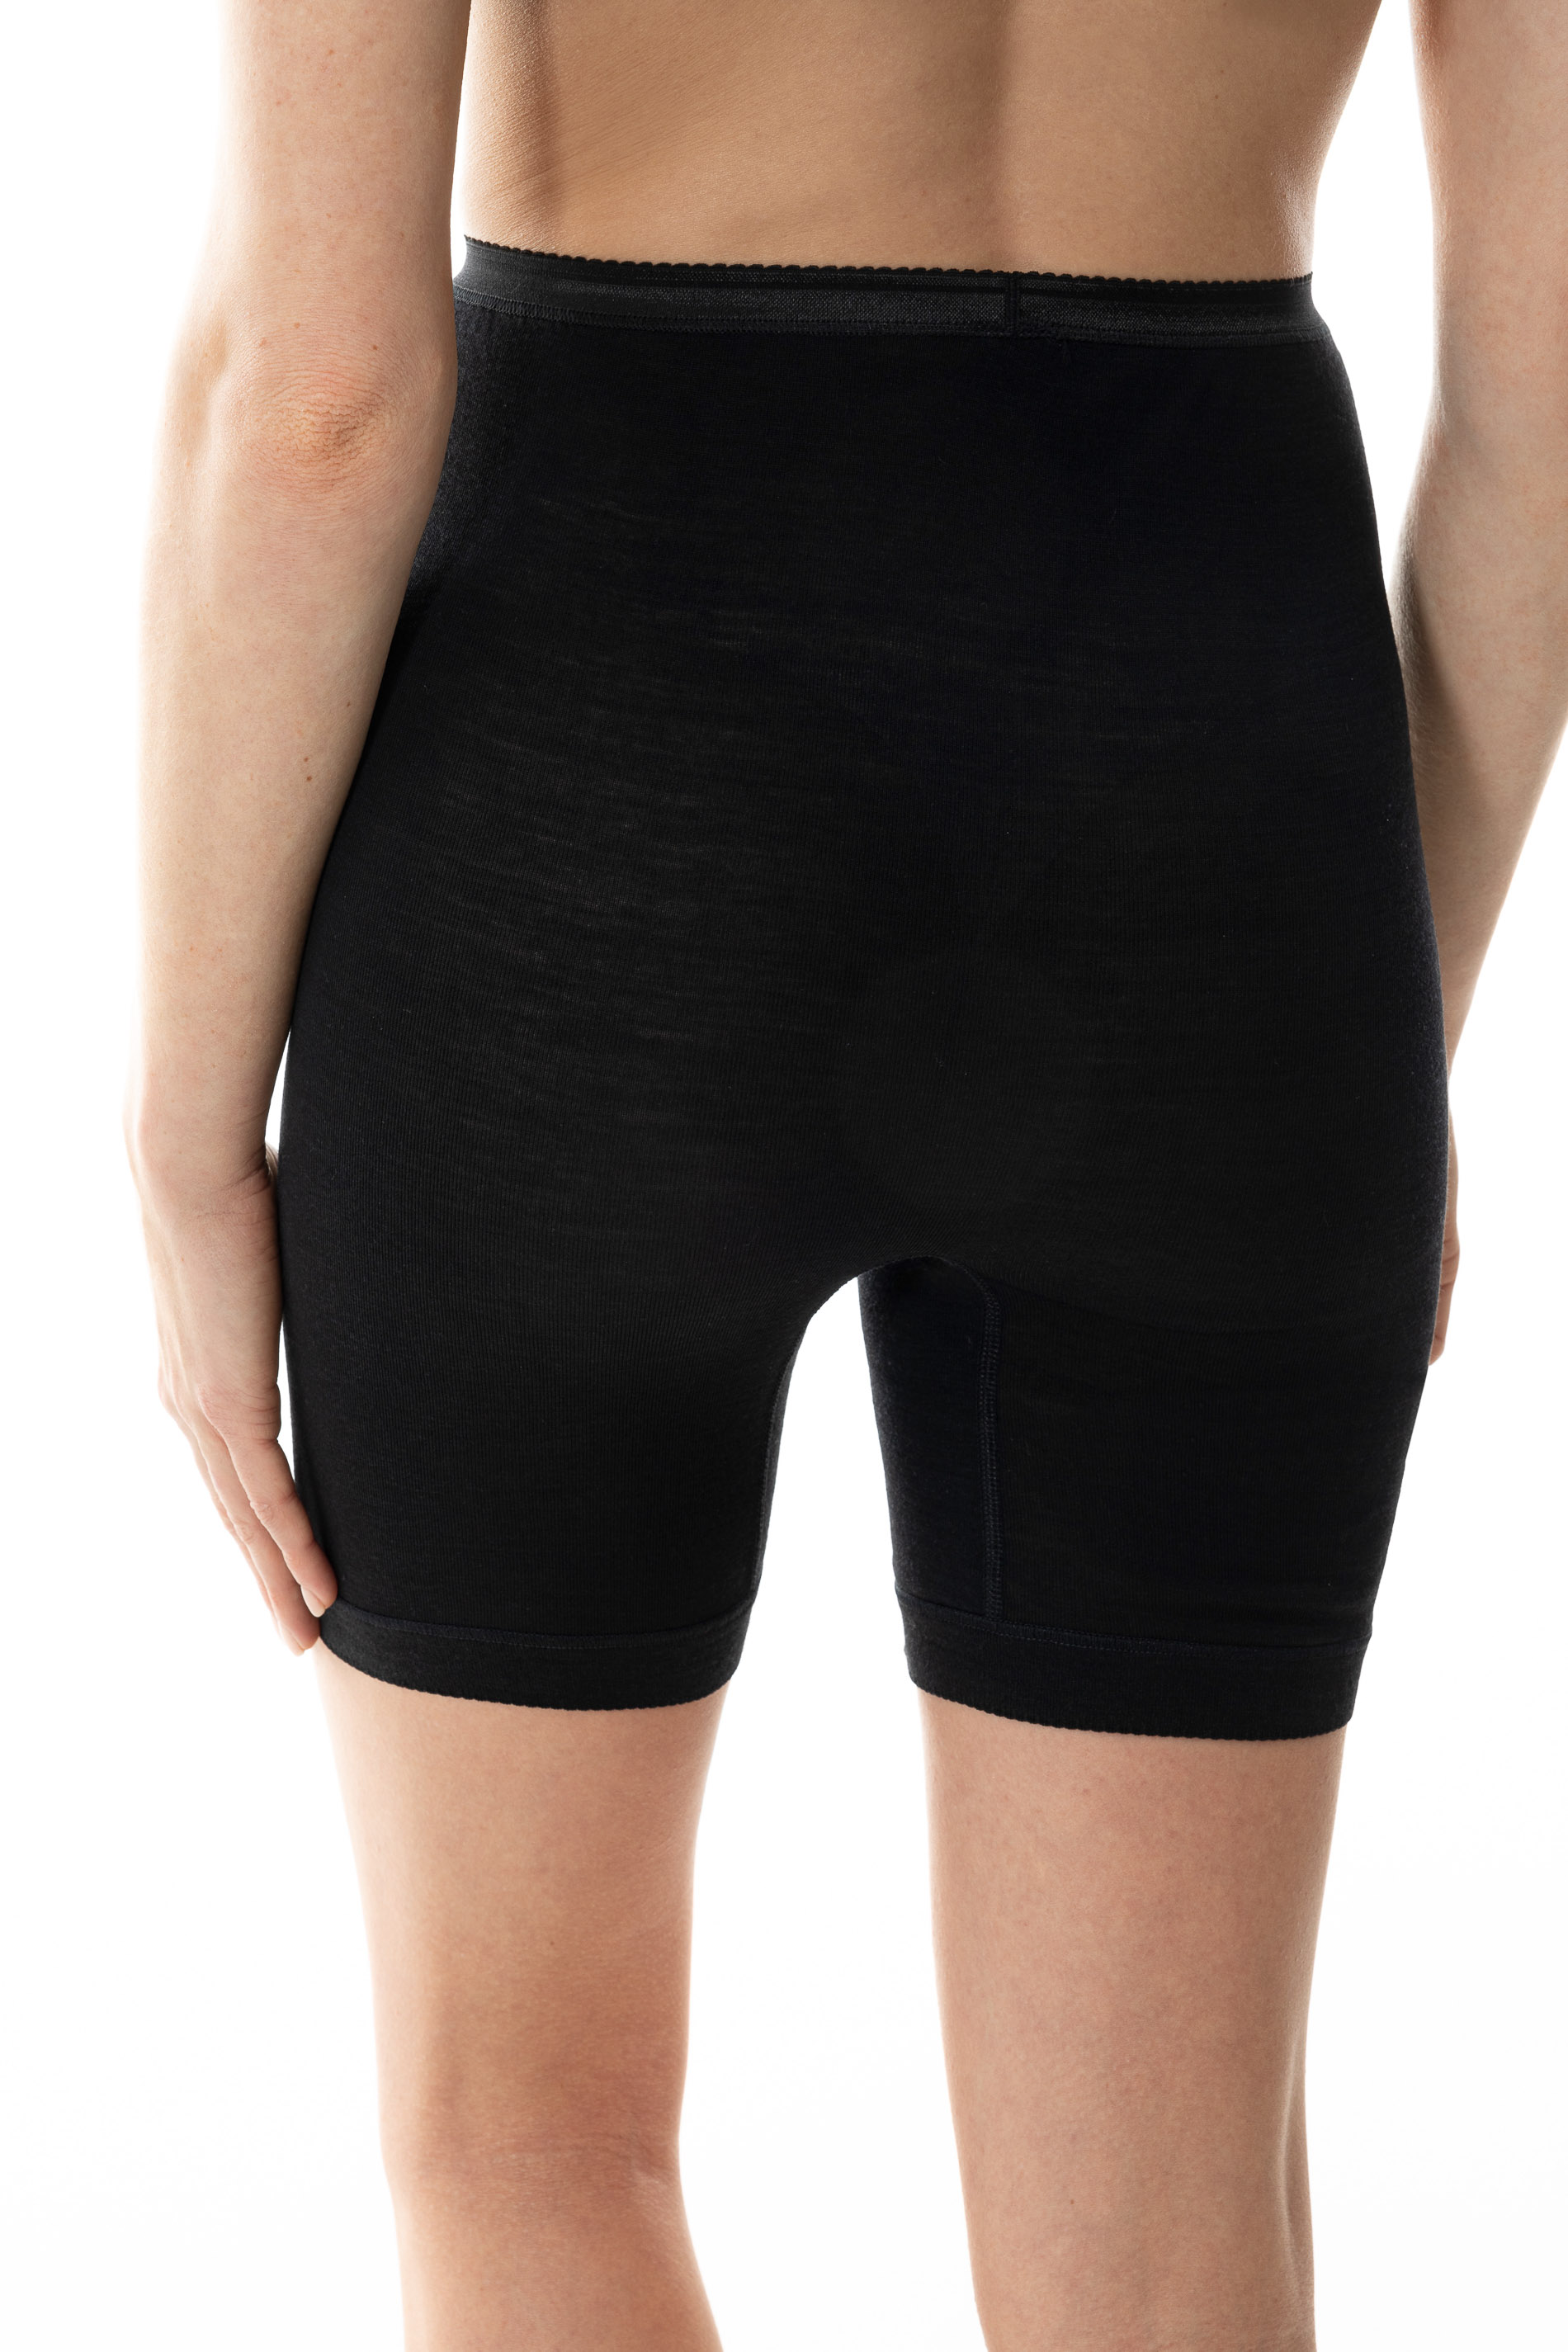 Long pants Black Serie Exquisite Rear View | mey®